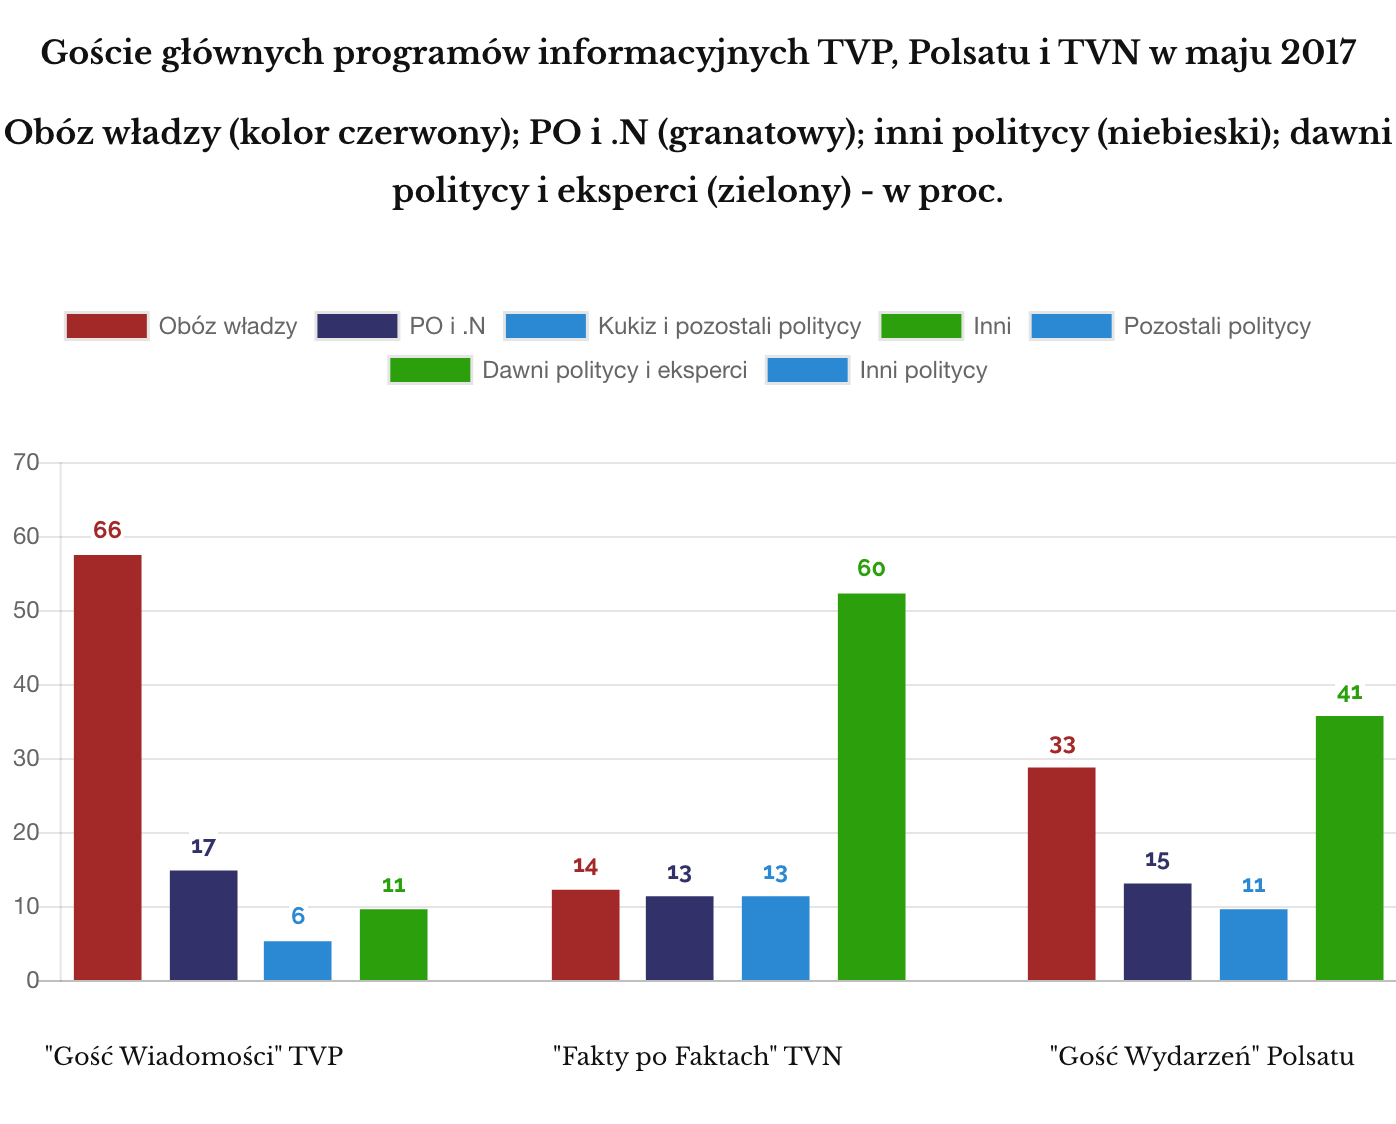 Gość Wiadomości, Fakty po Faktach, Gość Wydarzeń, maj 2017